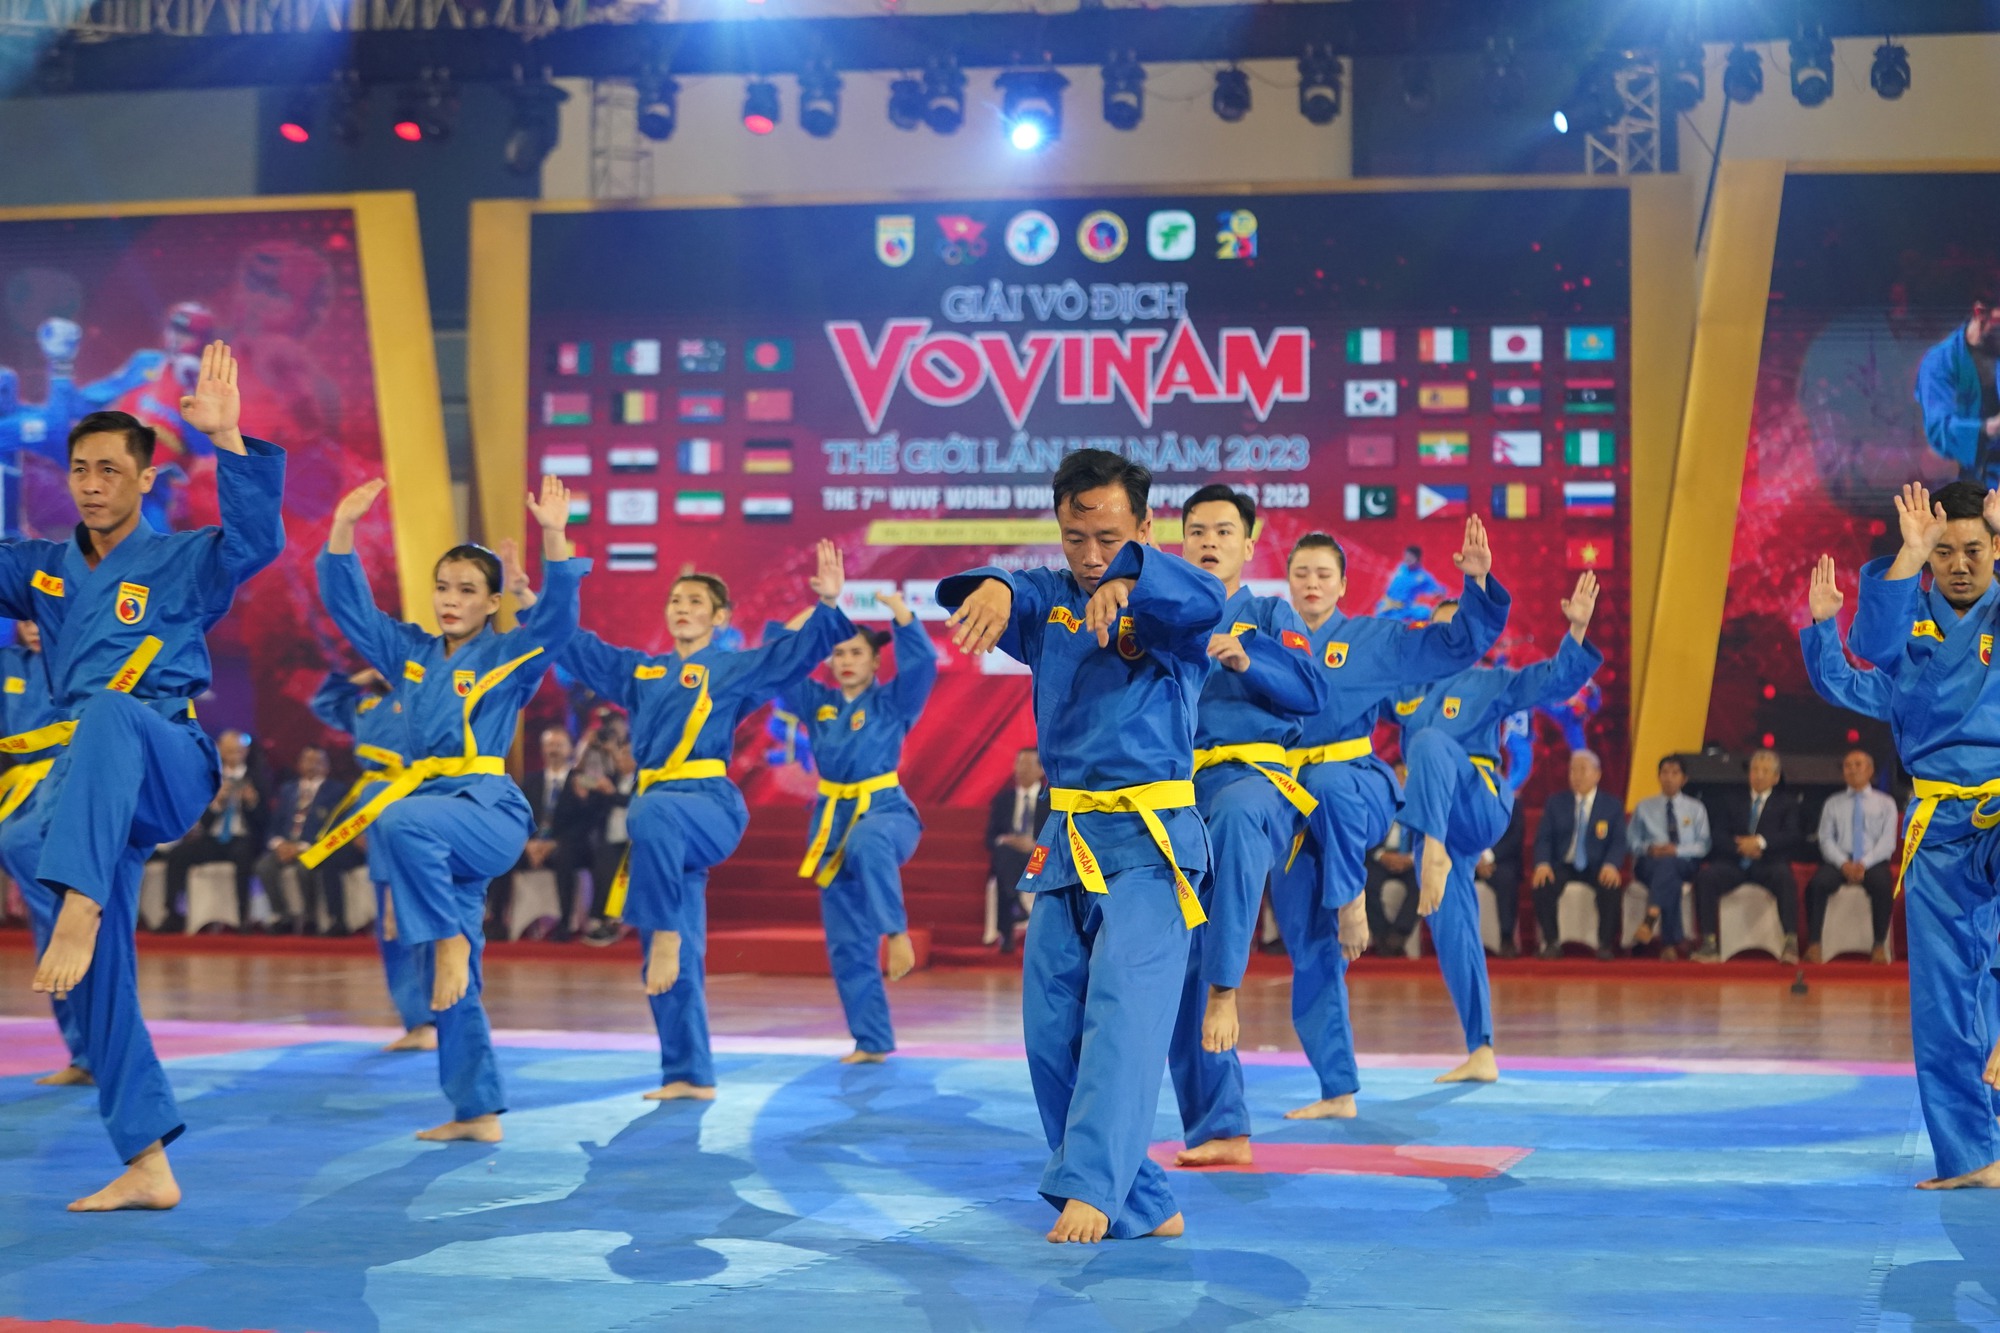 CLIP: Những màn biểu diễn ấn tượng trong lễ khai mạc Giải Vovinam thế giới lần 7-2023 - Ảnh 5.